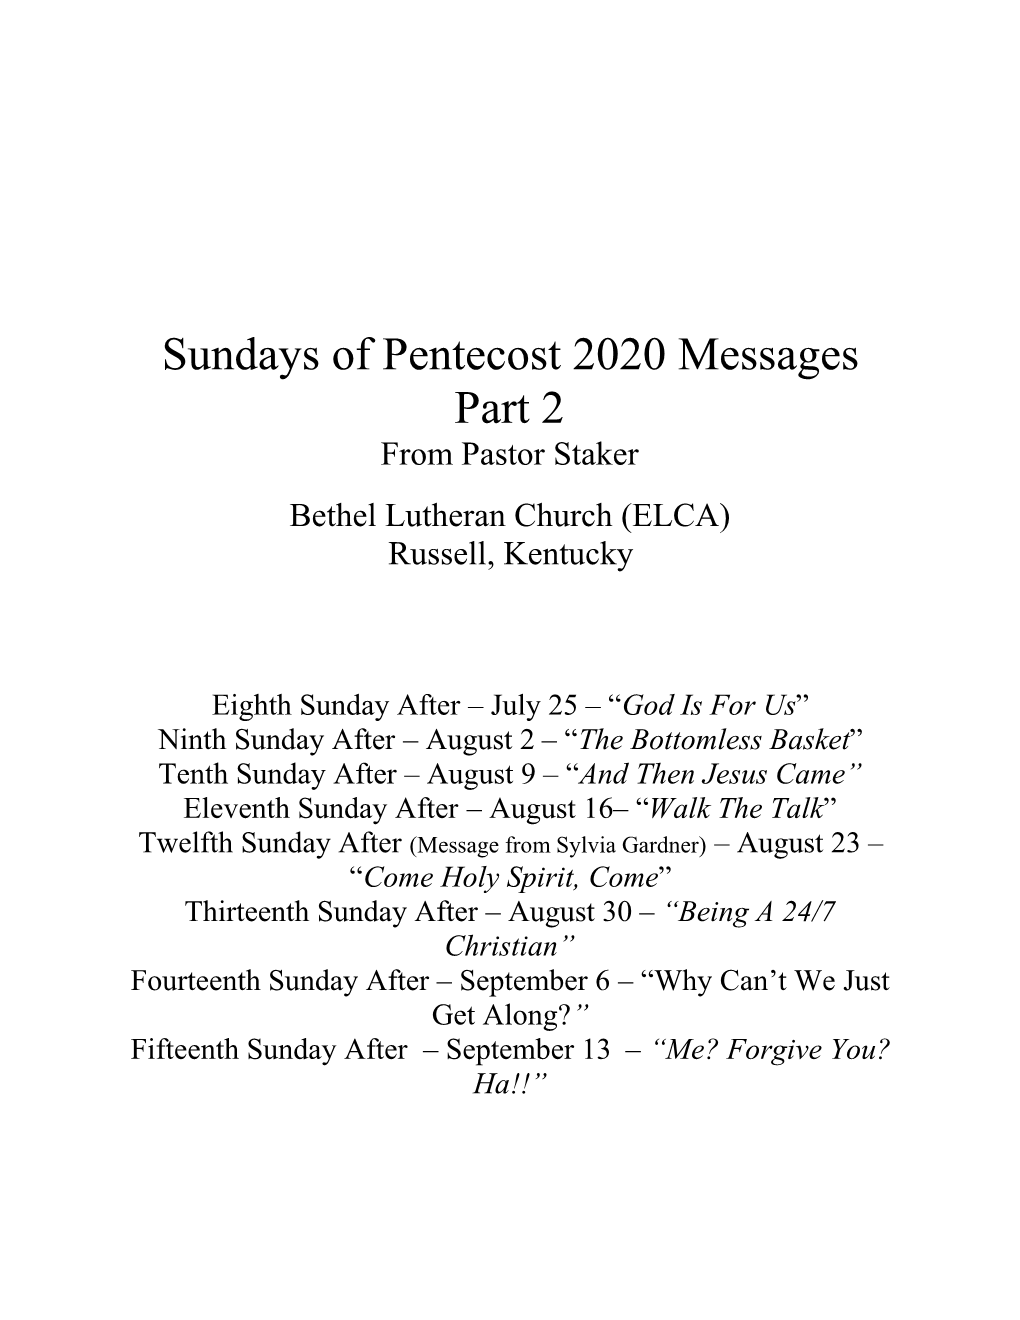 Sundays of Pentecost 2020 Messages Part 2 from Pastor Staker Bethel Lutheran Church (ELCA) Russell, Kentucky